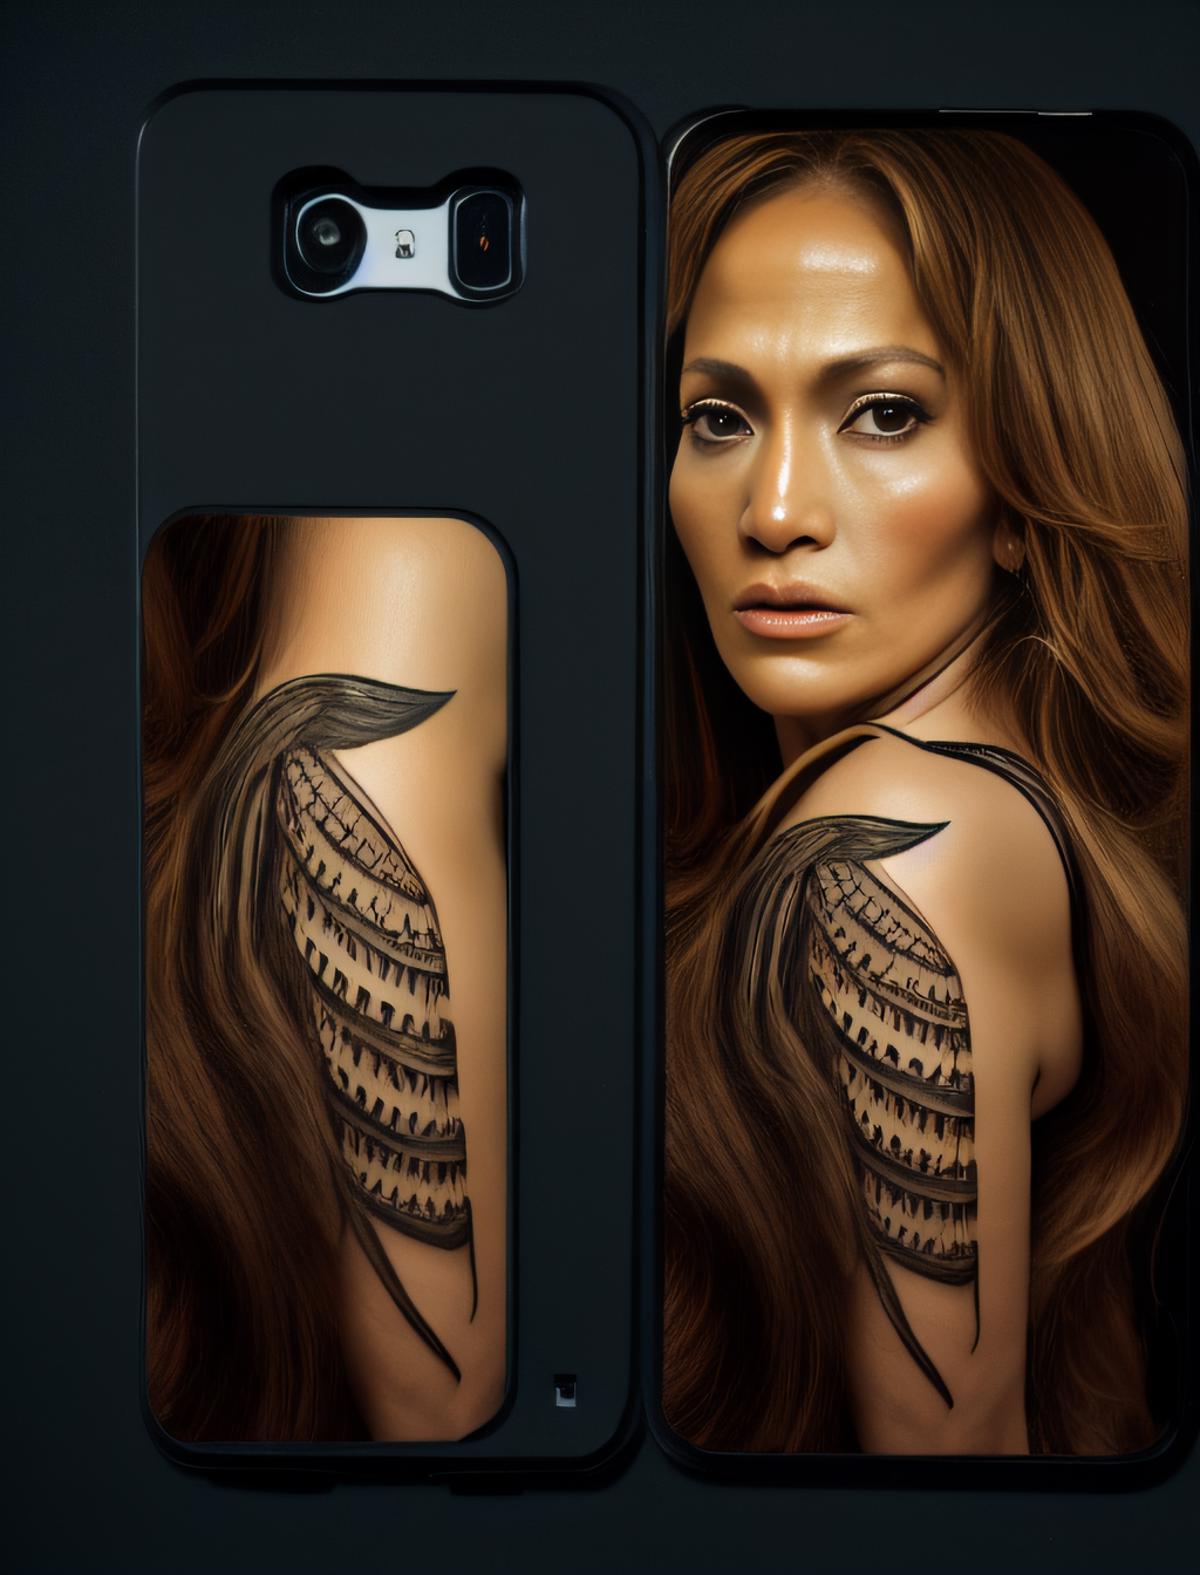 Jennifer Lopez image by parar20